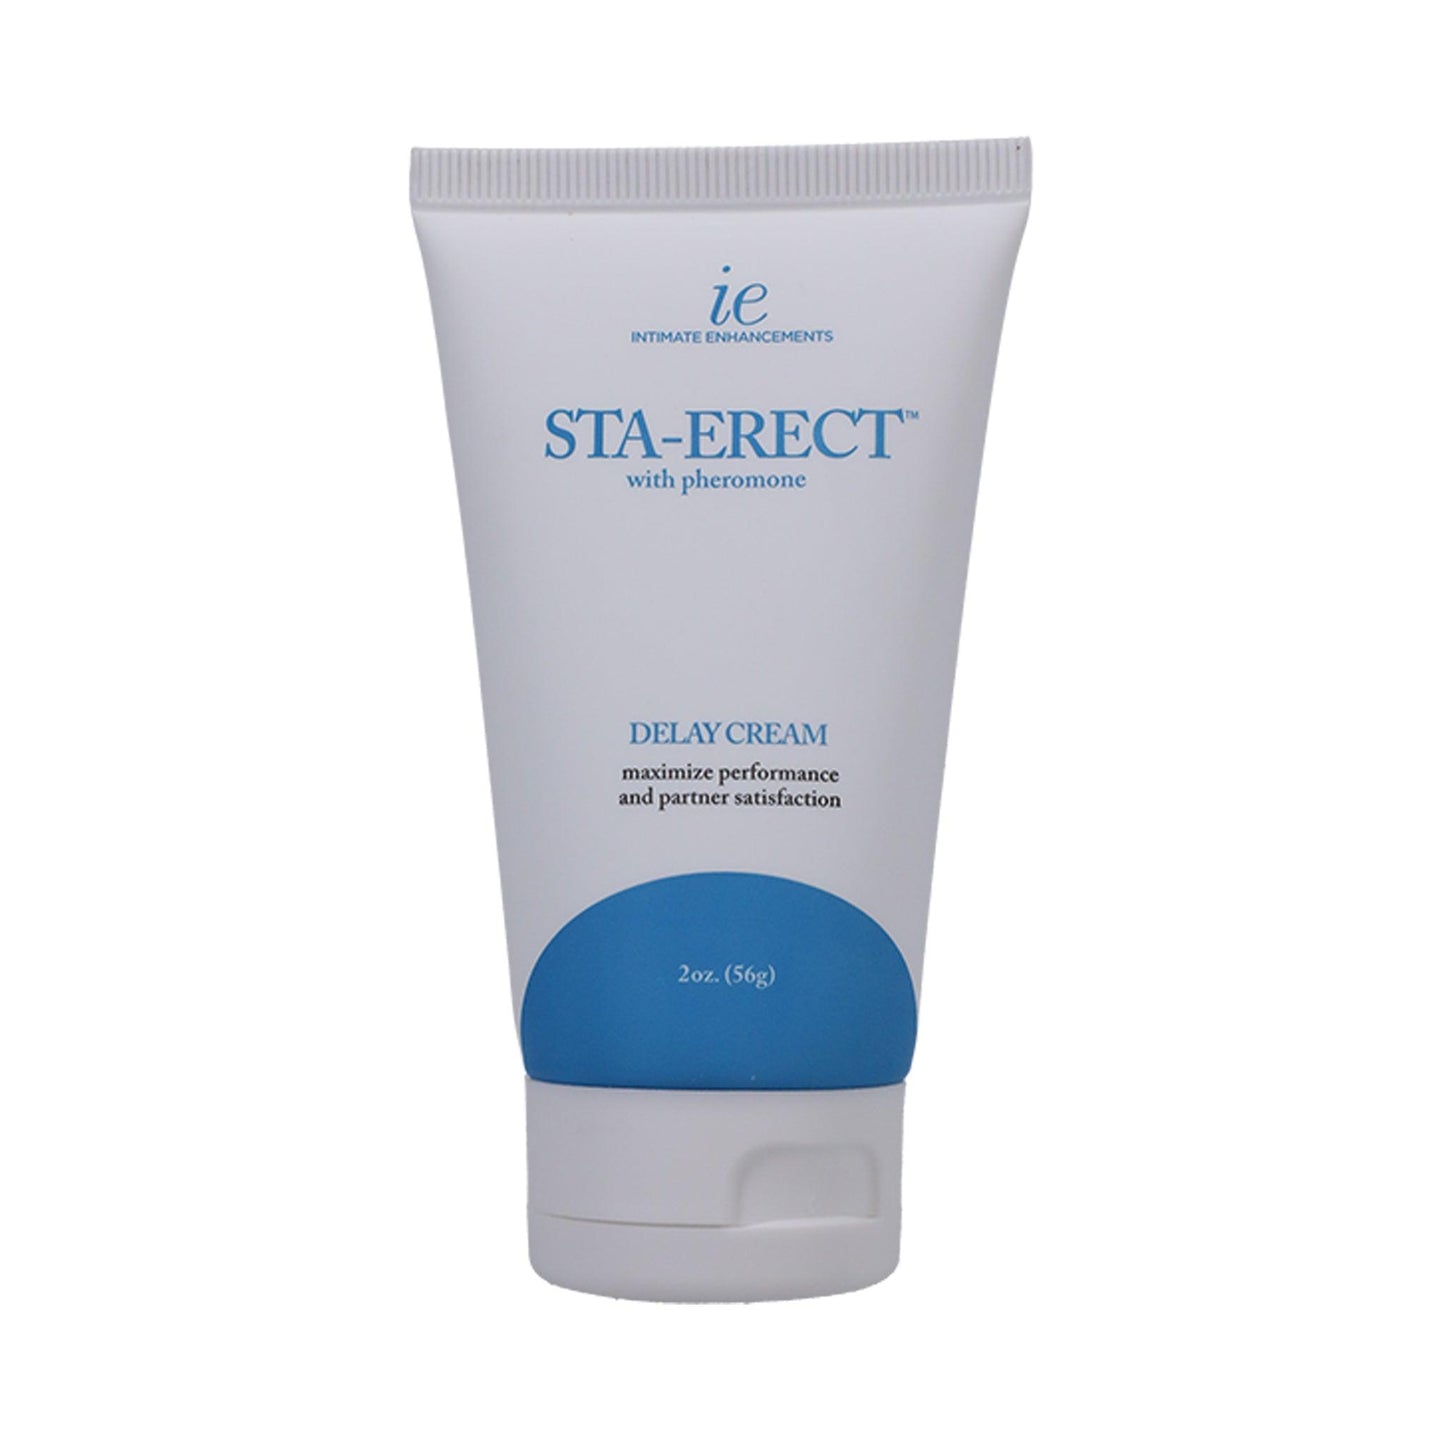 Sta-Erect Delay Cream for Men 2 oz (56 g) - sexlube.com